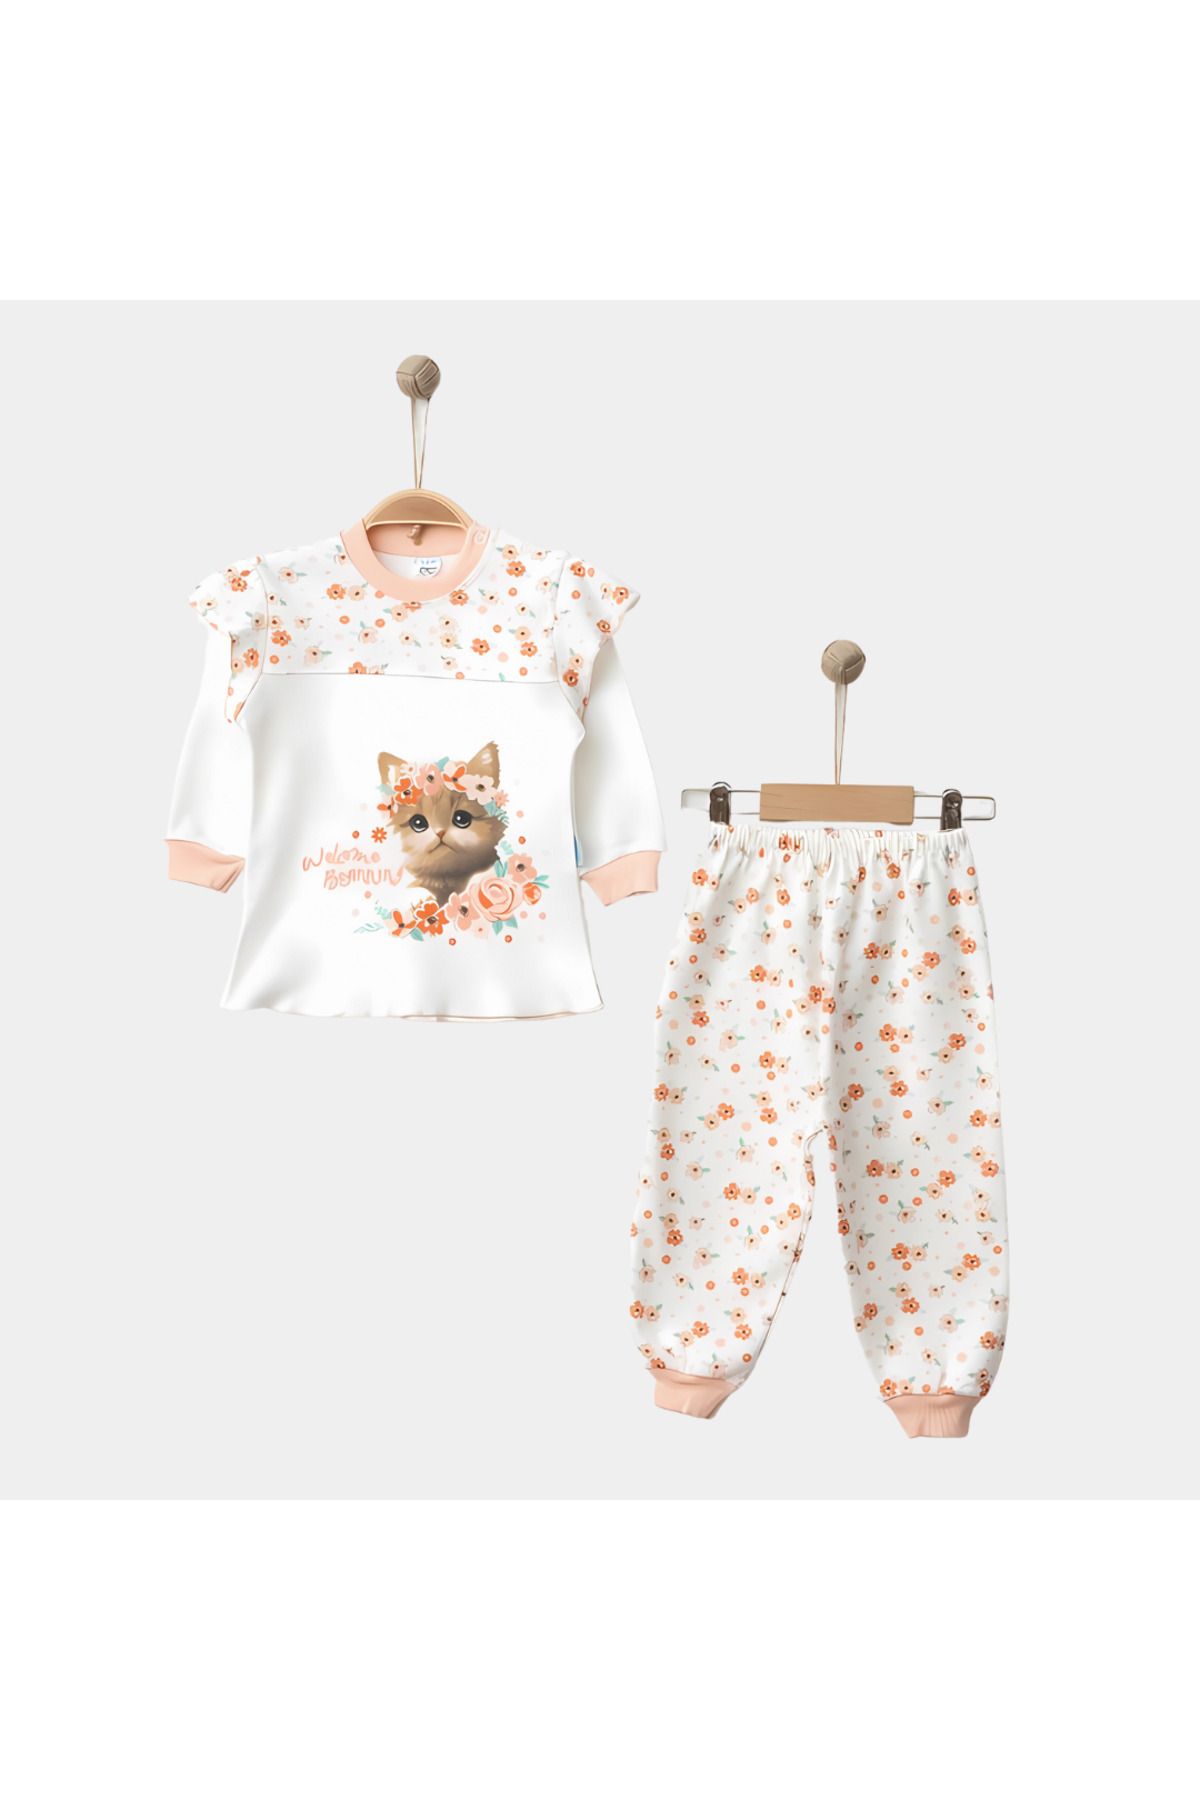 Rise Raba Kız Bebek Takım Pamuklu Kedi Baskılı Çiçekli 2'li Pijama Takımı 9-18 Aylık